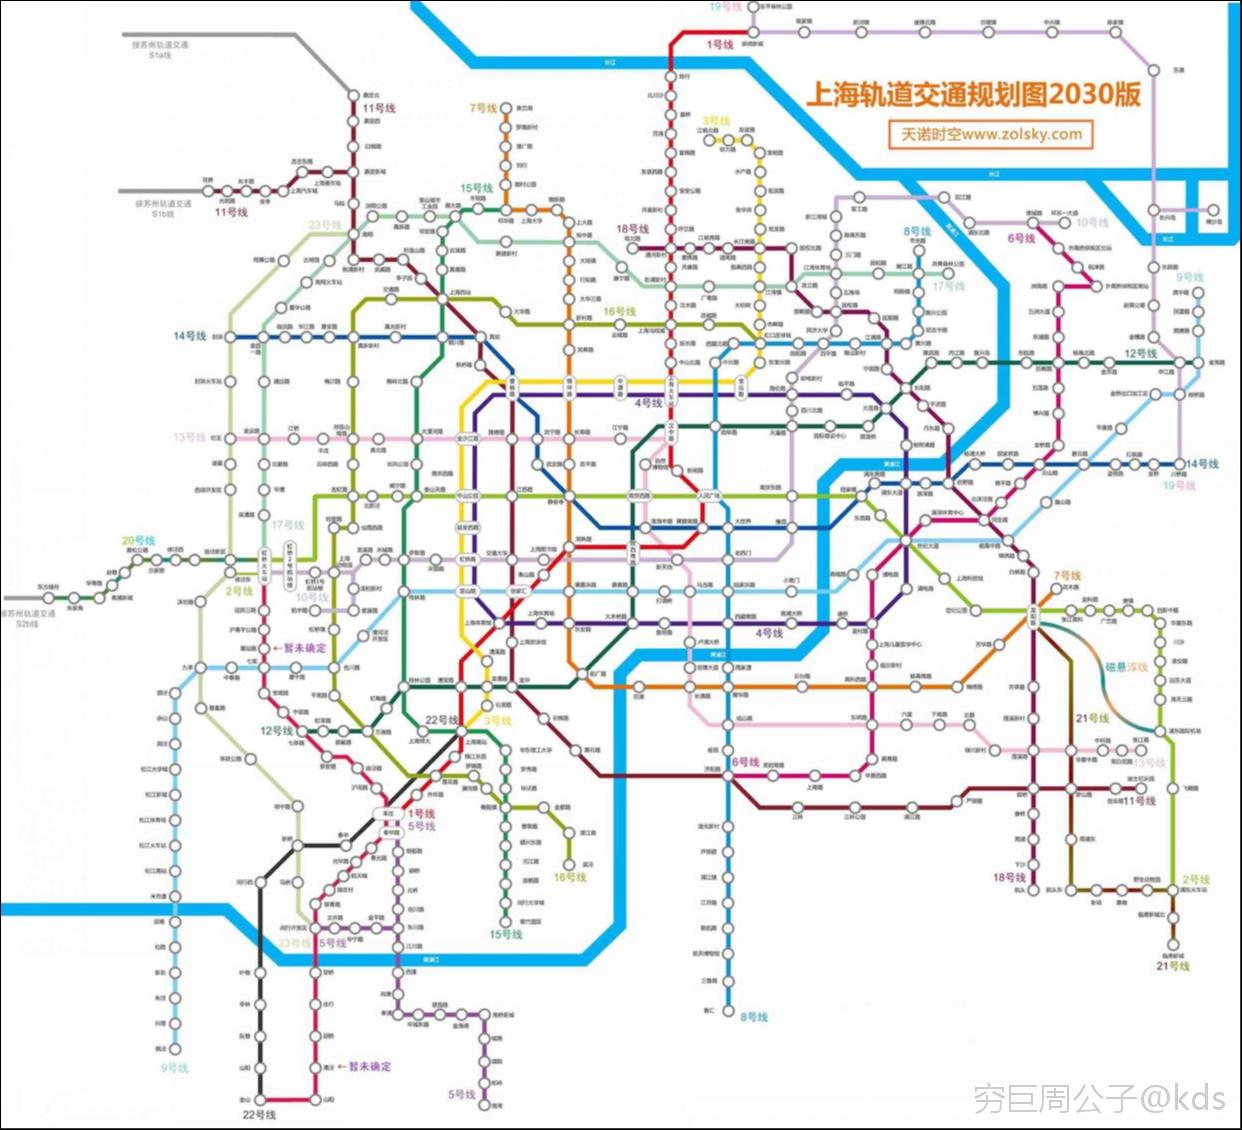 上海轨道交通规划图- - -2030版